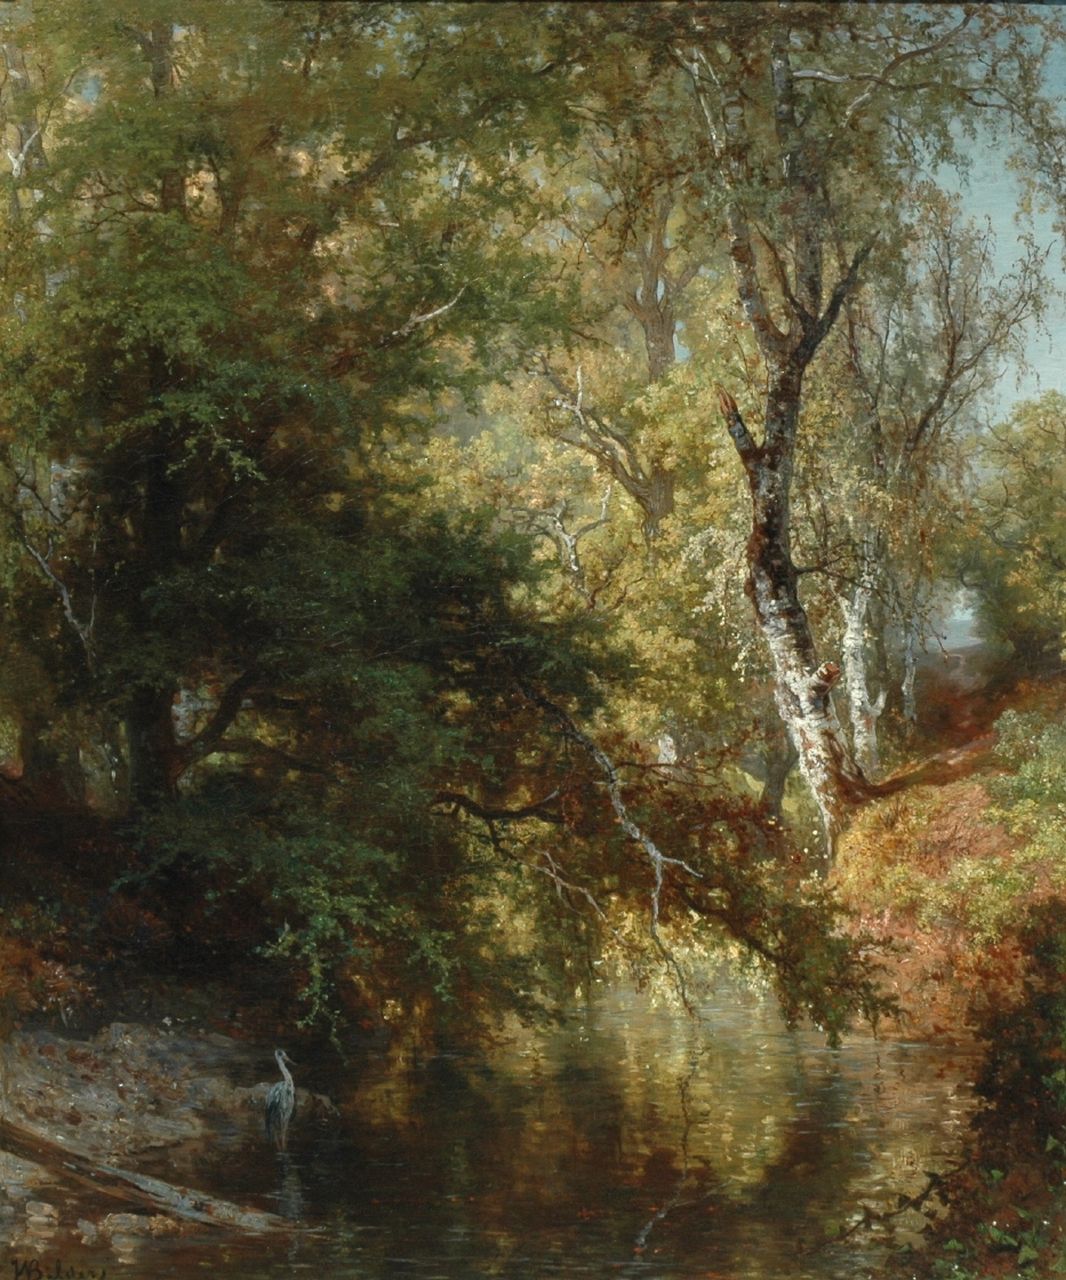 Bilders J.W.  | Johannes Warnardus Bilders, A view of the 'Renkumse beek', oil on canvas 96.0 x 80.0 cm, signed l.l.